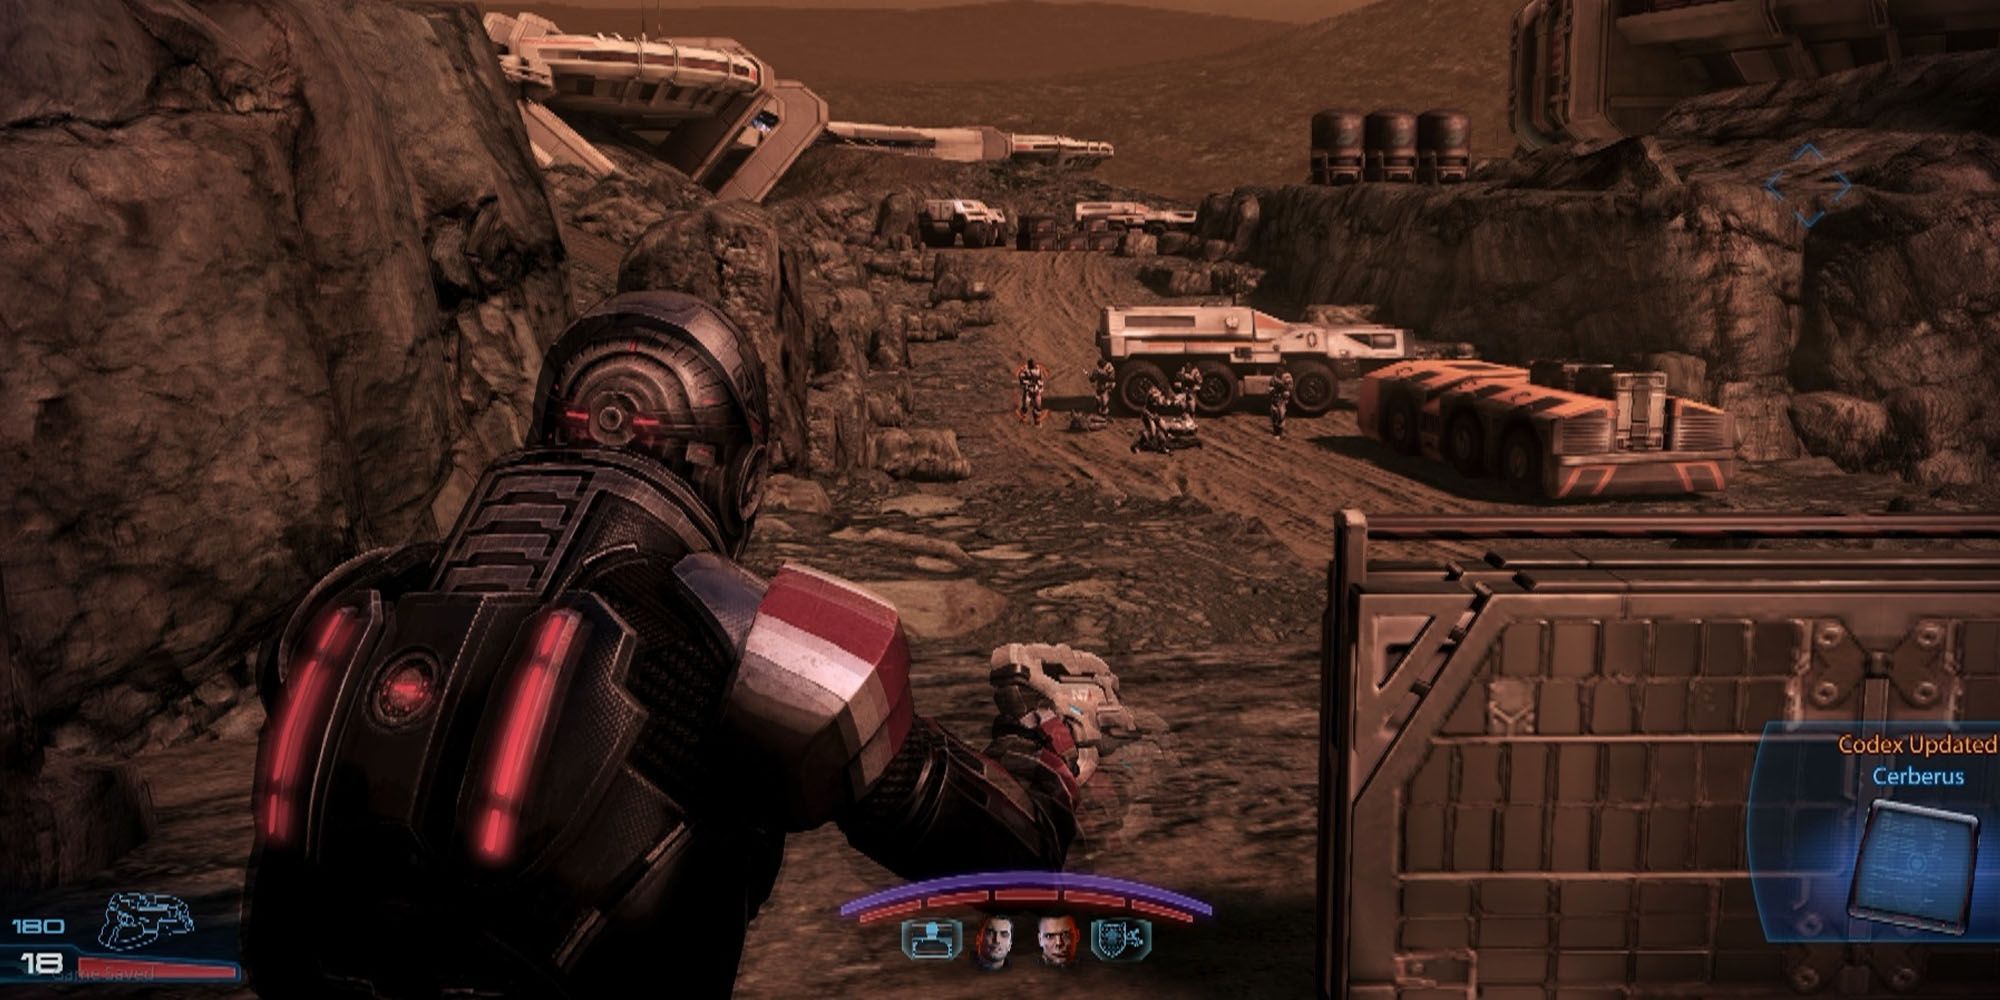 View behind Commander Shepard aiming gun on Mars 